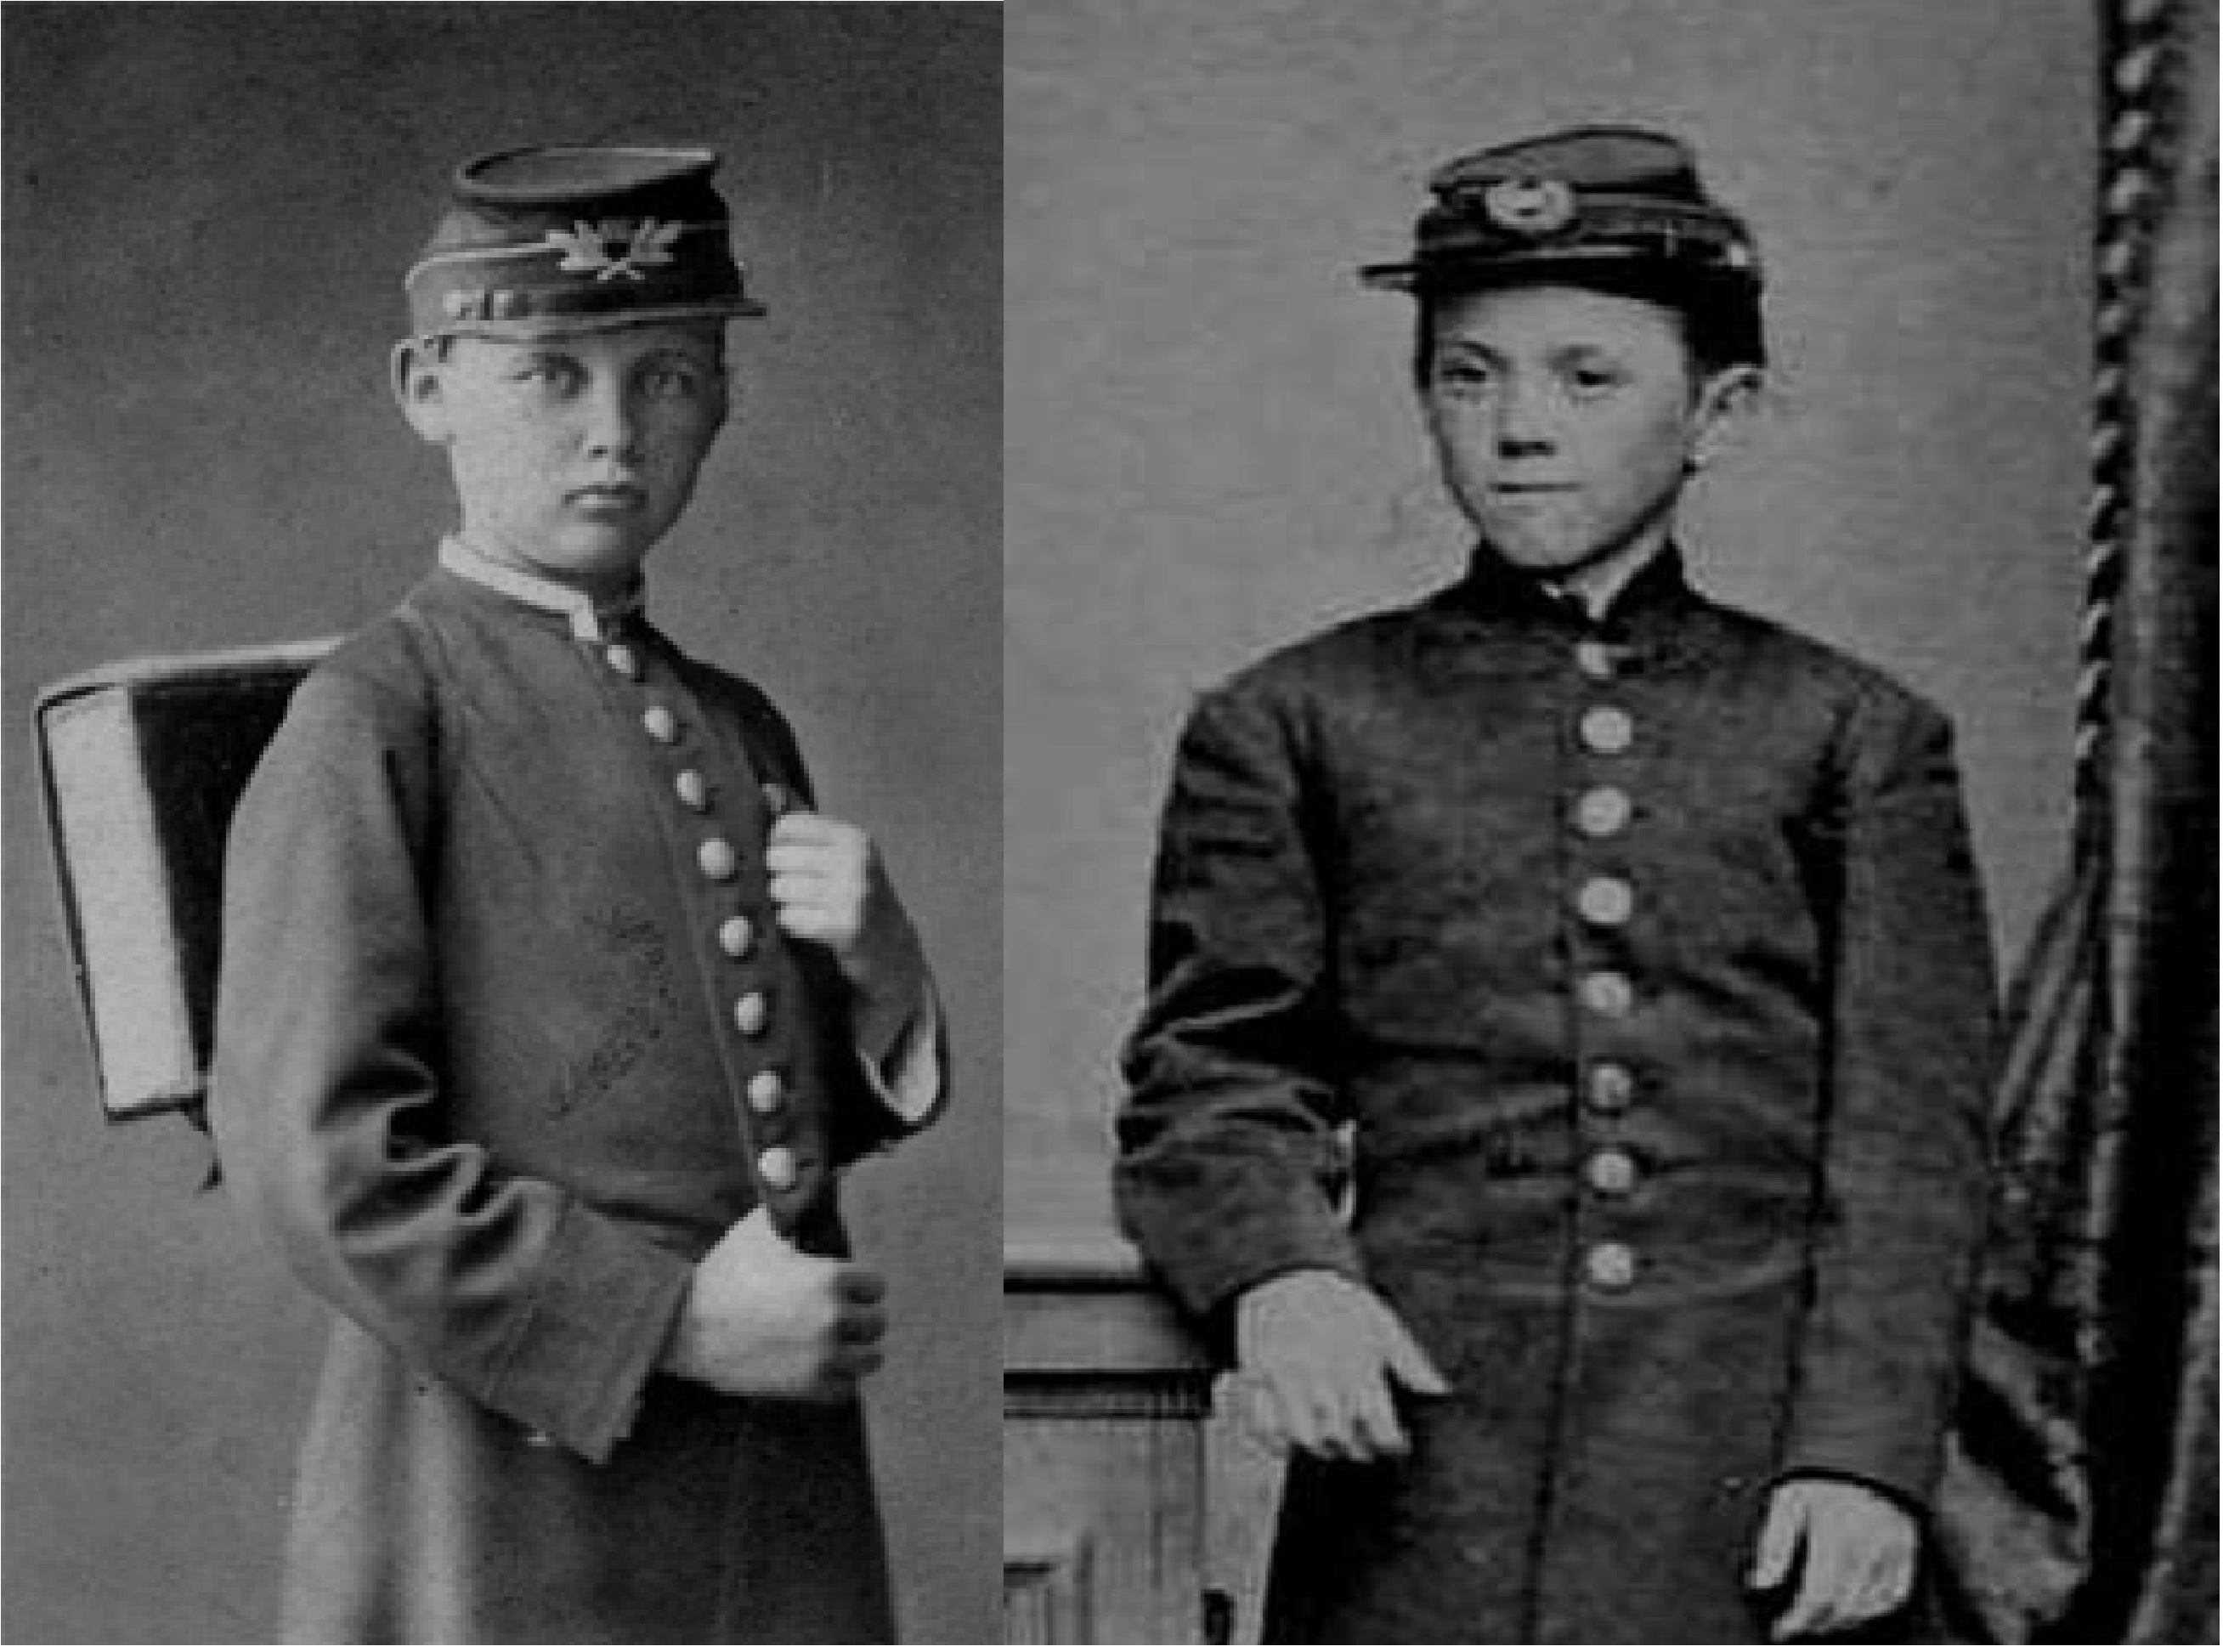 Слева гимназист мужской гимназии Рубинской в форме образца 1868-1871 годов  Справа барабанщик 18-го пехотного полка США Джимми Дойл, раненный в 1863 году в Коннектикуте